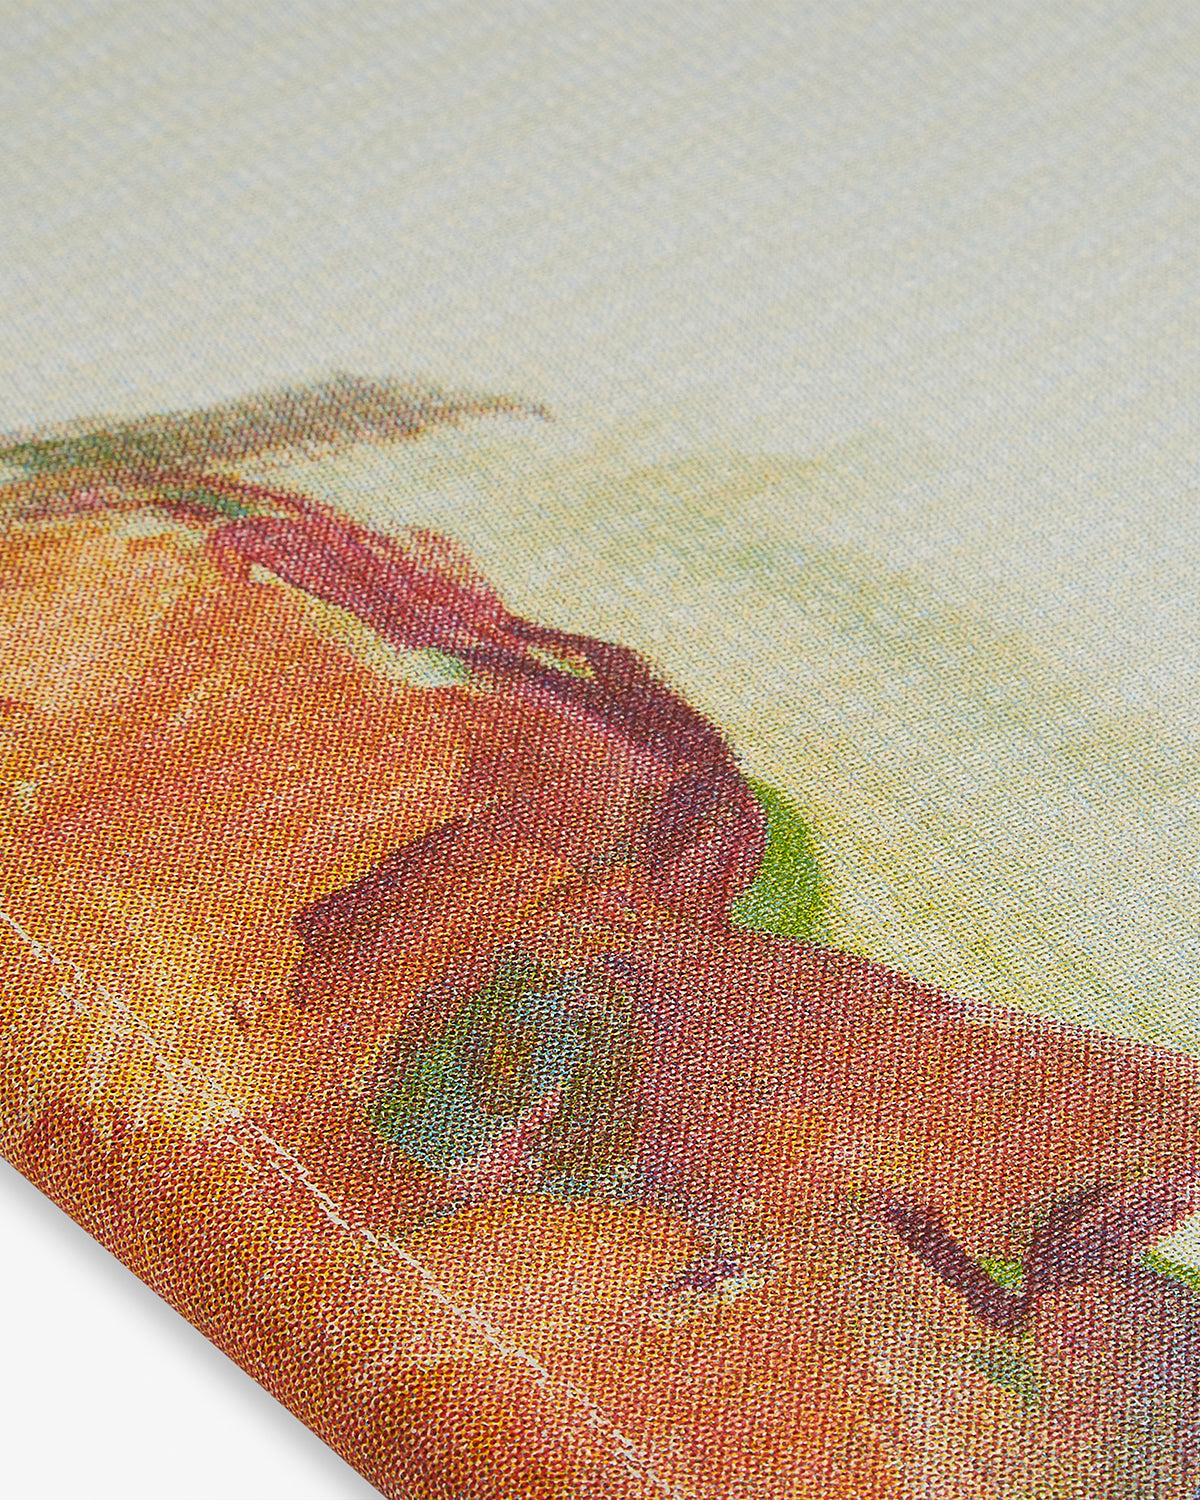 Maria Lassnig: Paintings Default Title